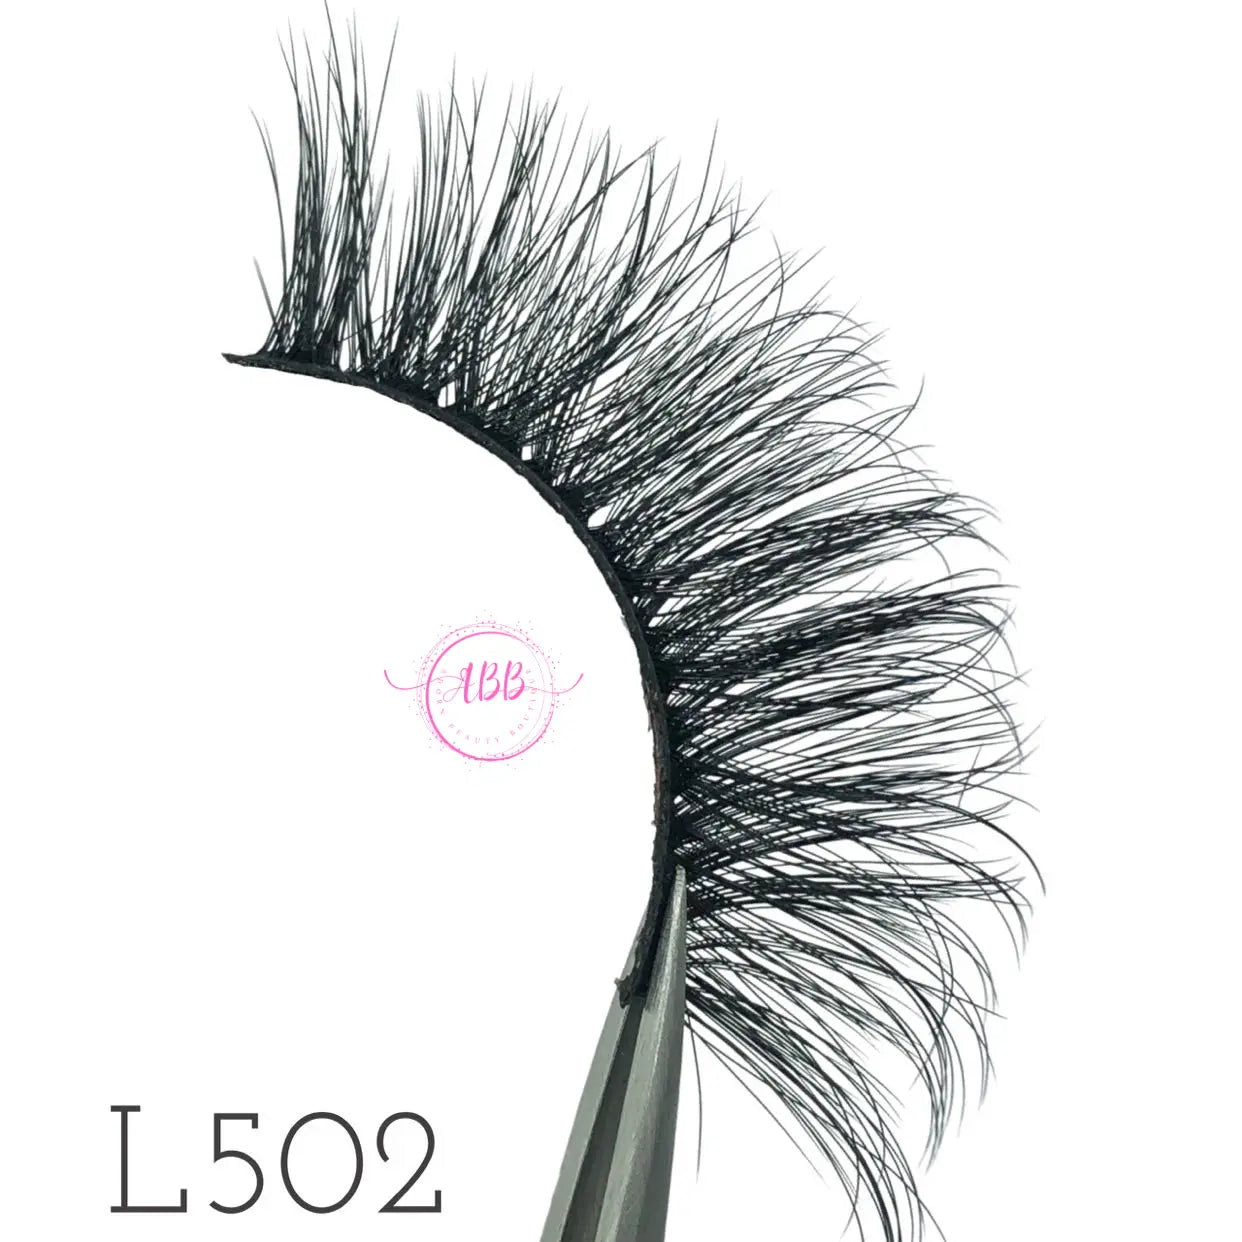 L502 Mink Eyelash Adorn Beauty Boutique